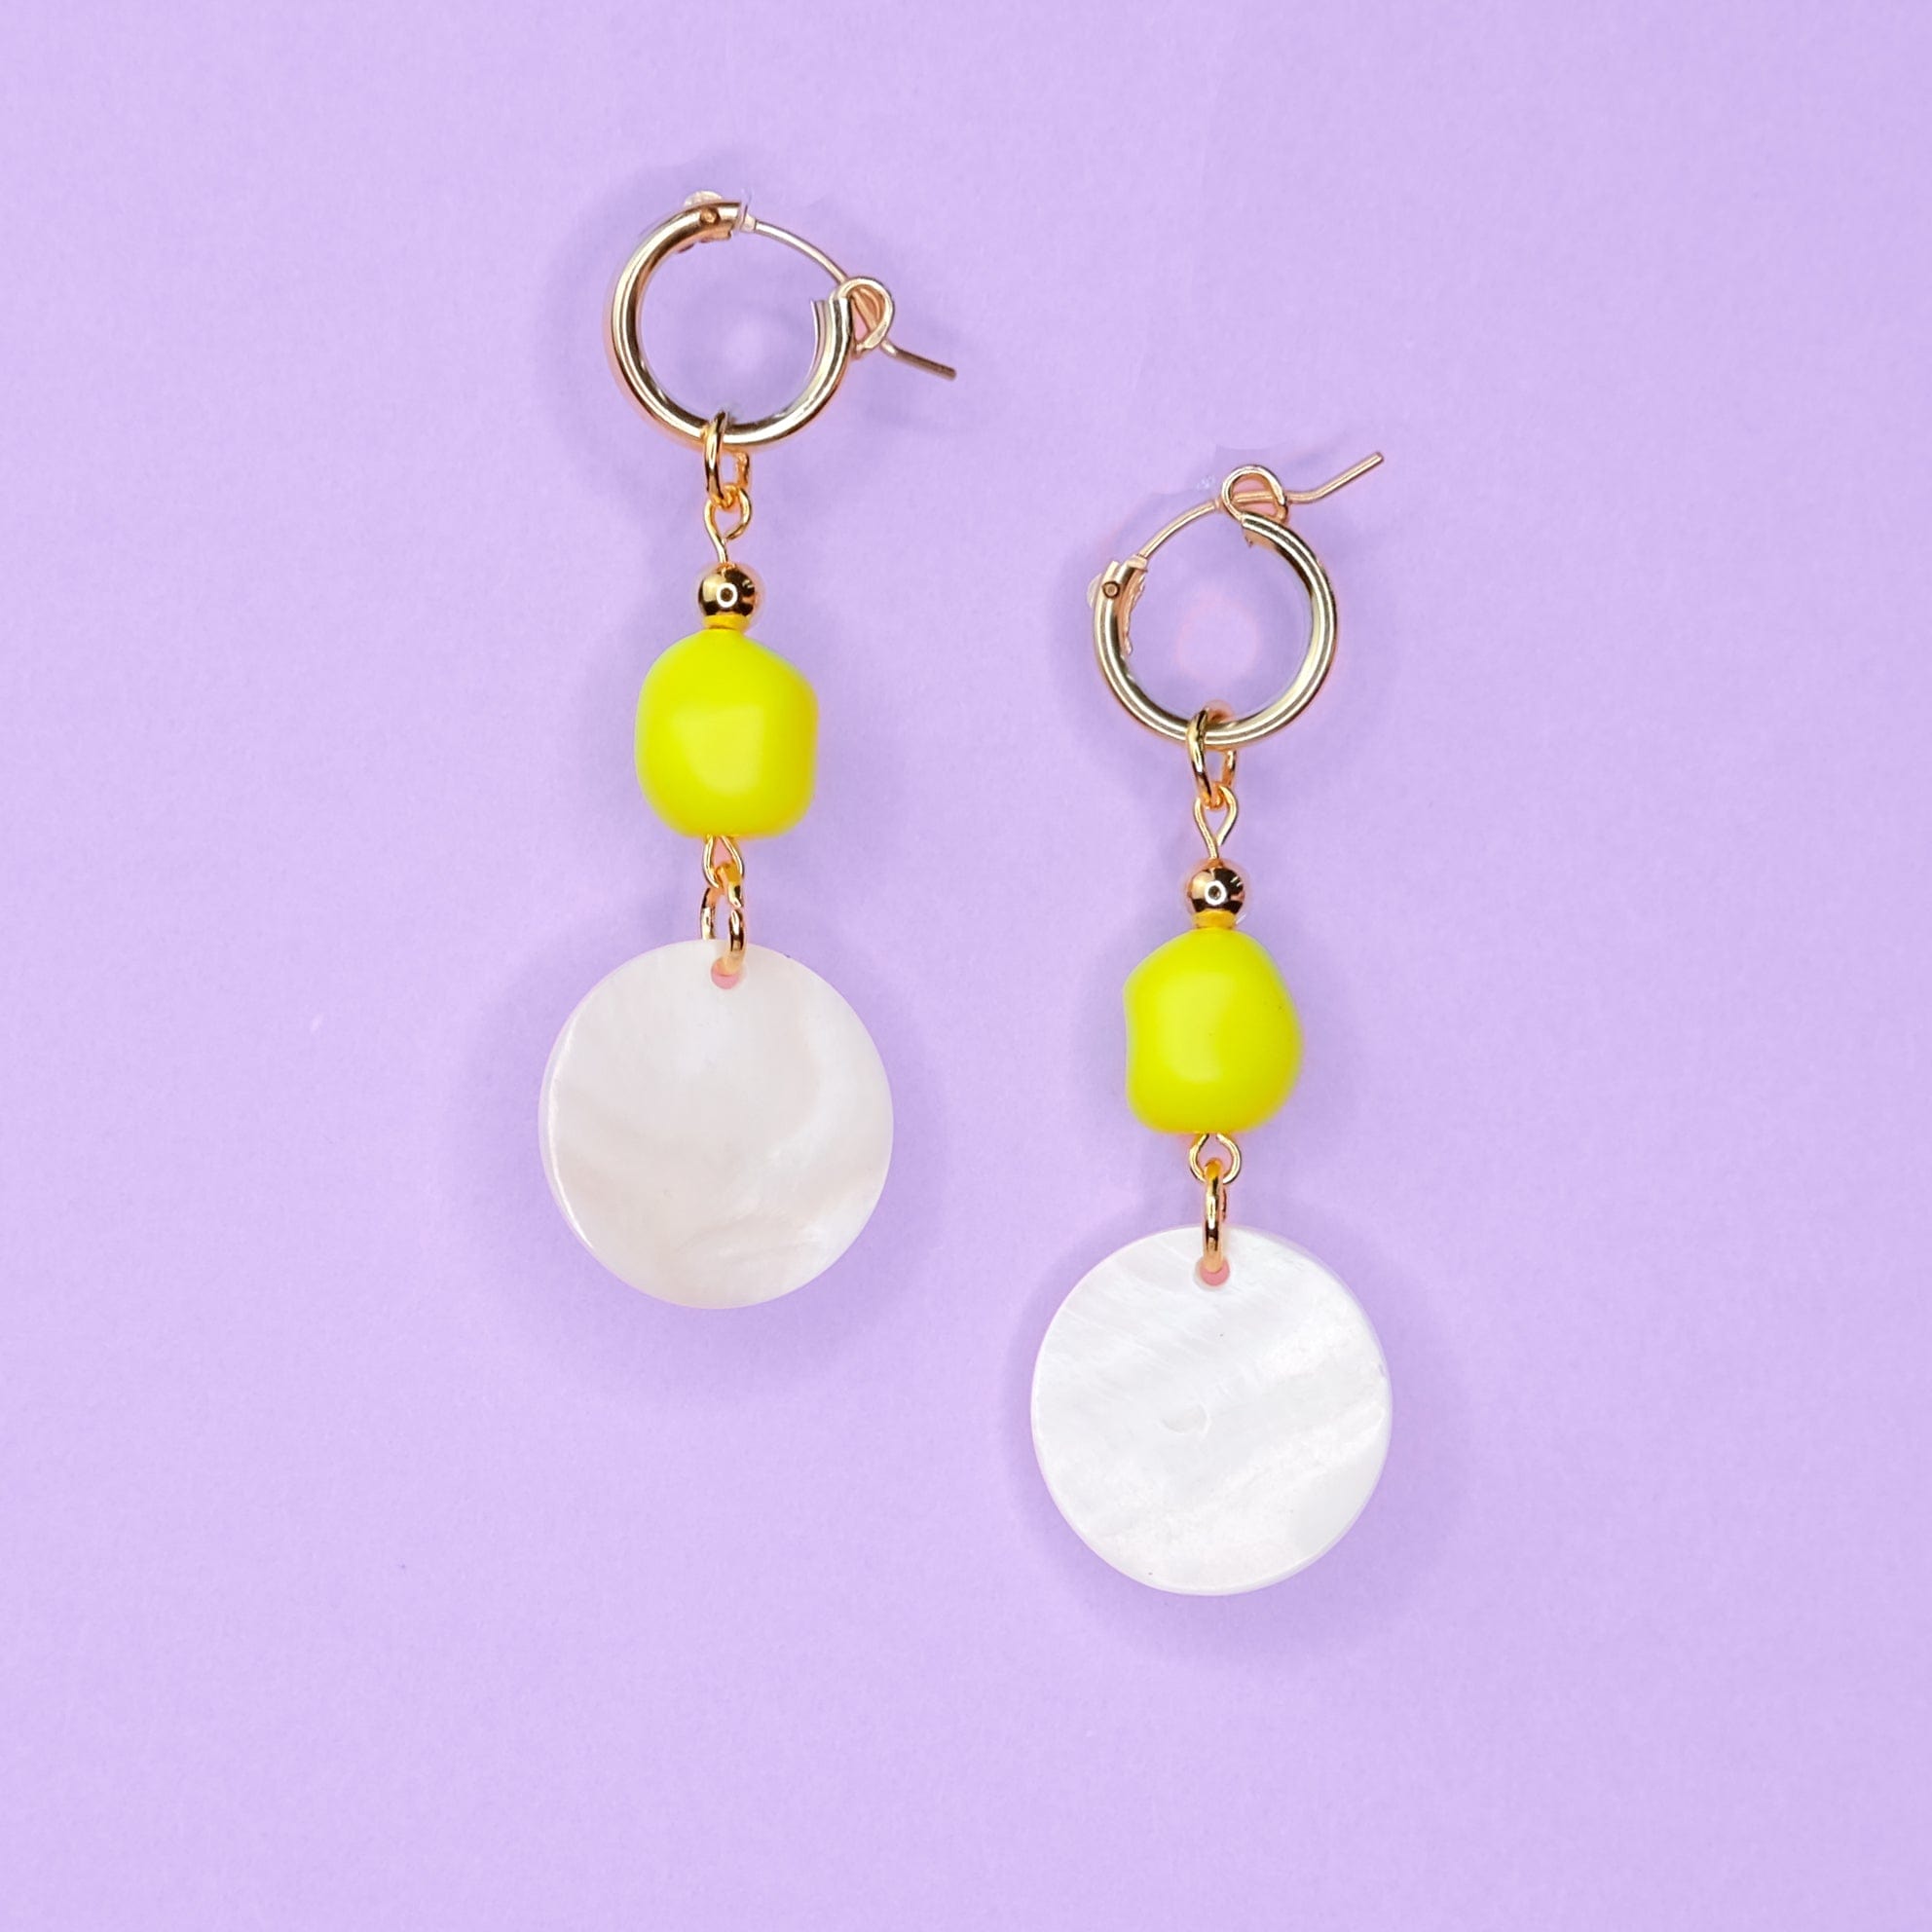 Dangly hoop earrings in neon yellow and pearl